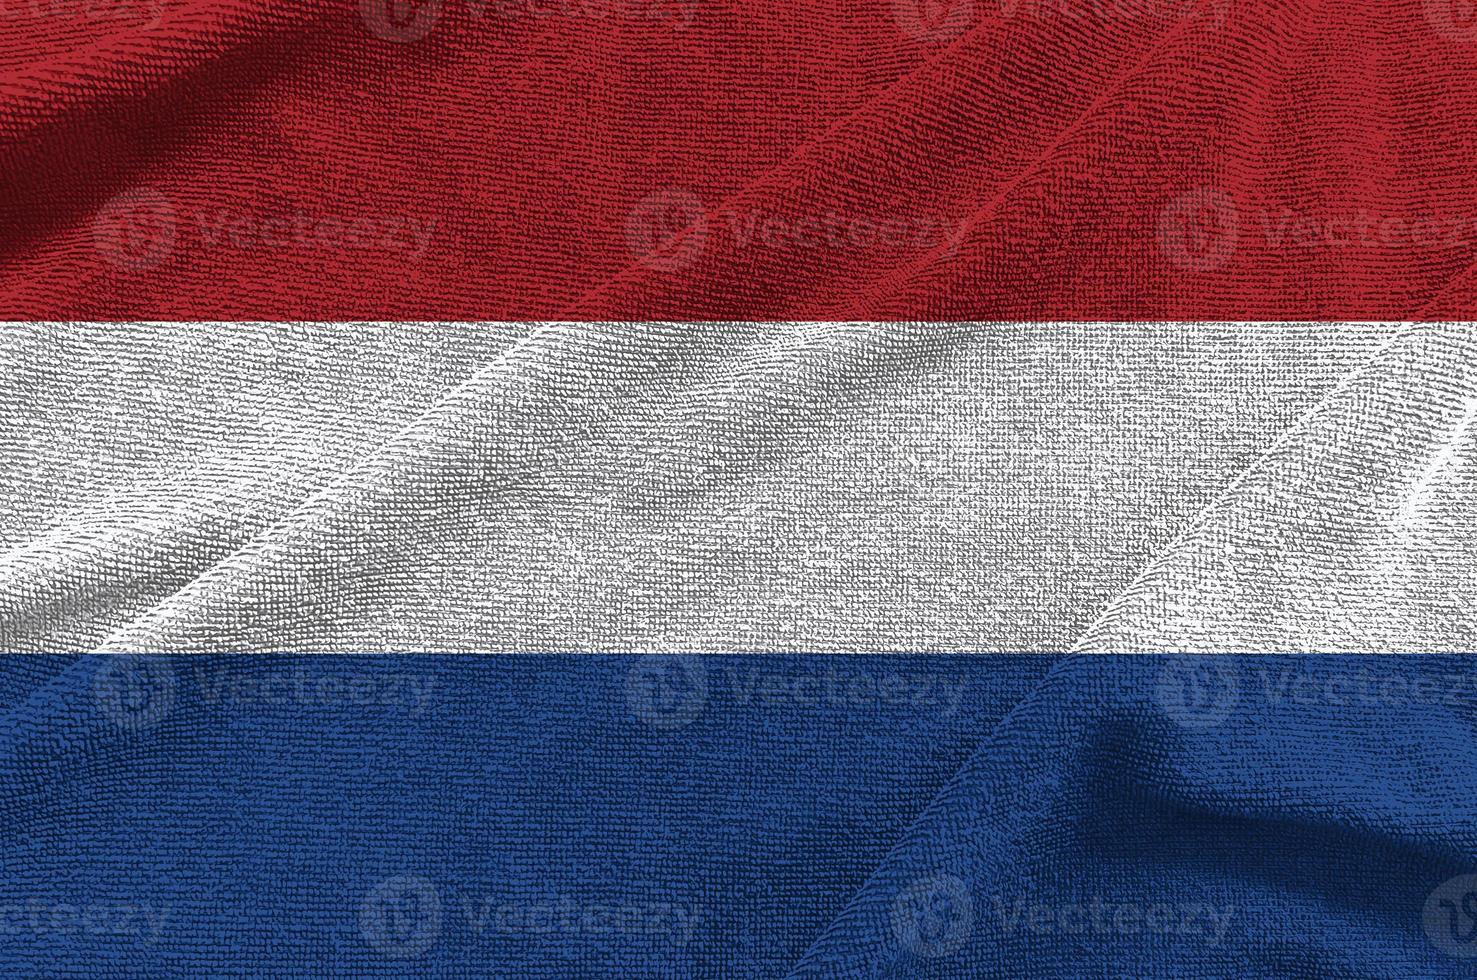 onda de bandeira holandesa isolada em png ou fundo transparente, símbolos da holanda, modelo para banner, cartão, publicidade, promover, comercial de tv, anúncios, web design, ilustração foto